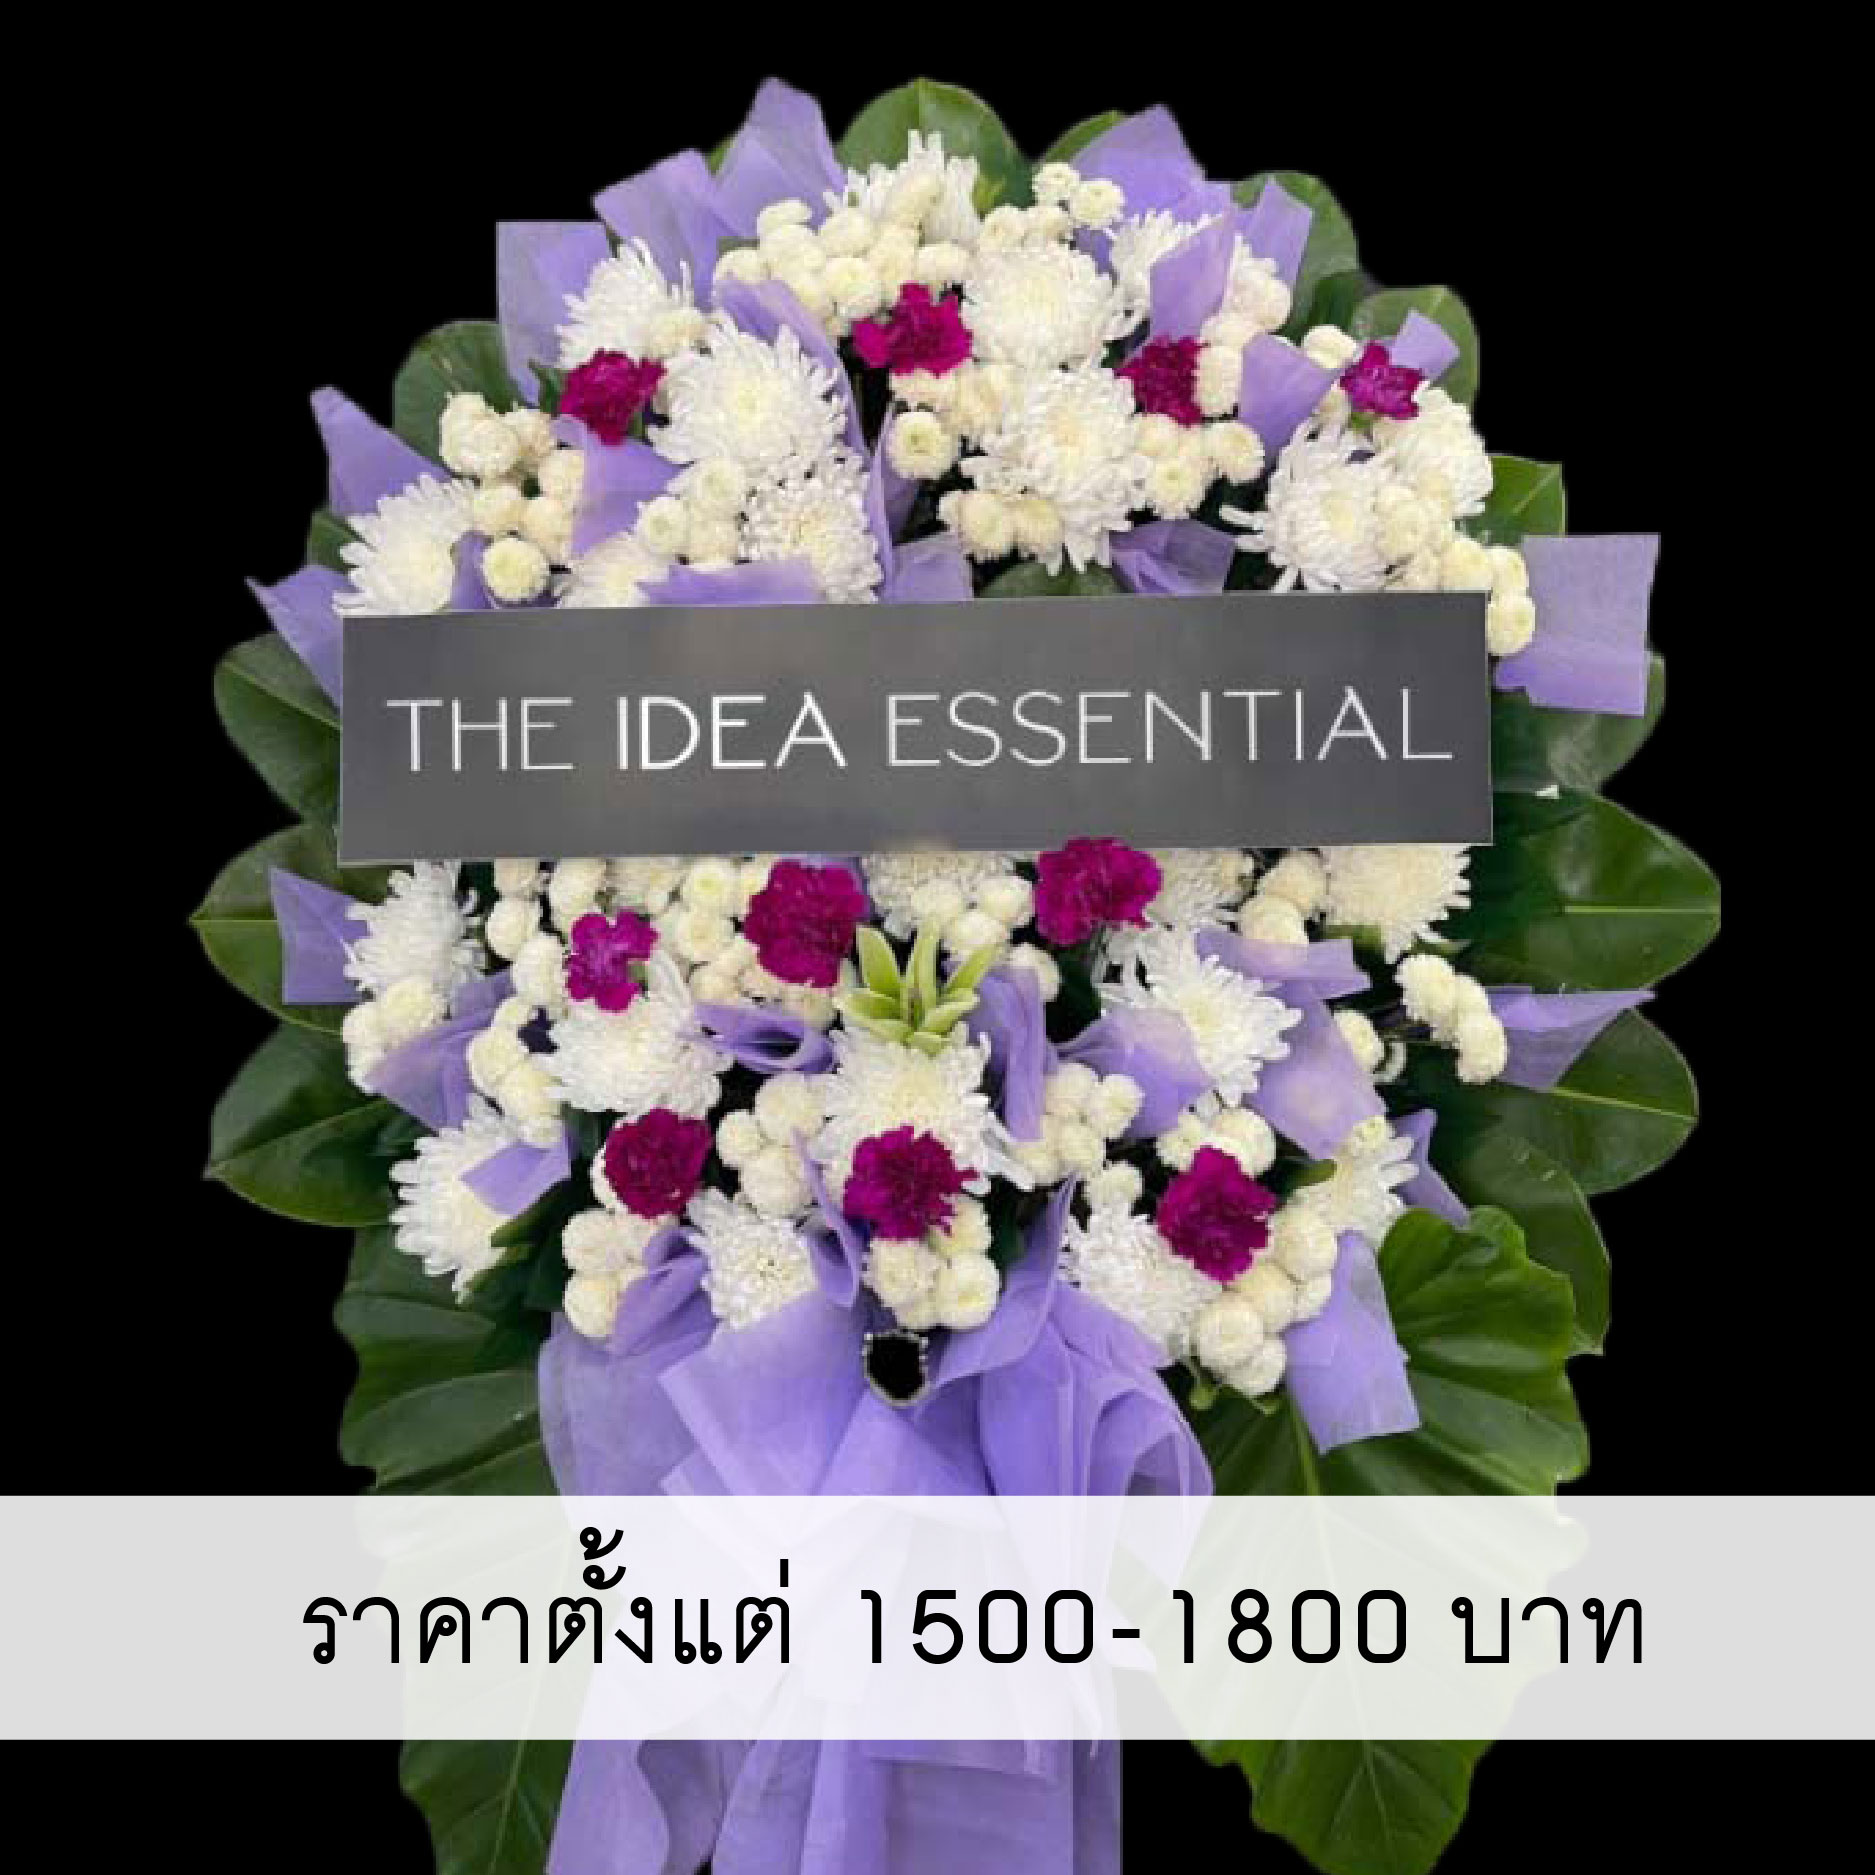 พวงหรีดดอกไม้สด ราคาตั้งแต่ 1500-1800 บาท